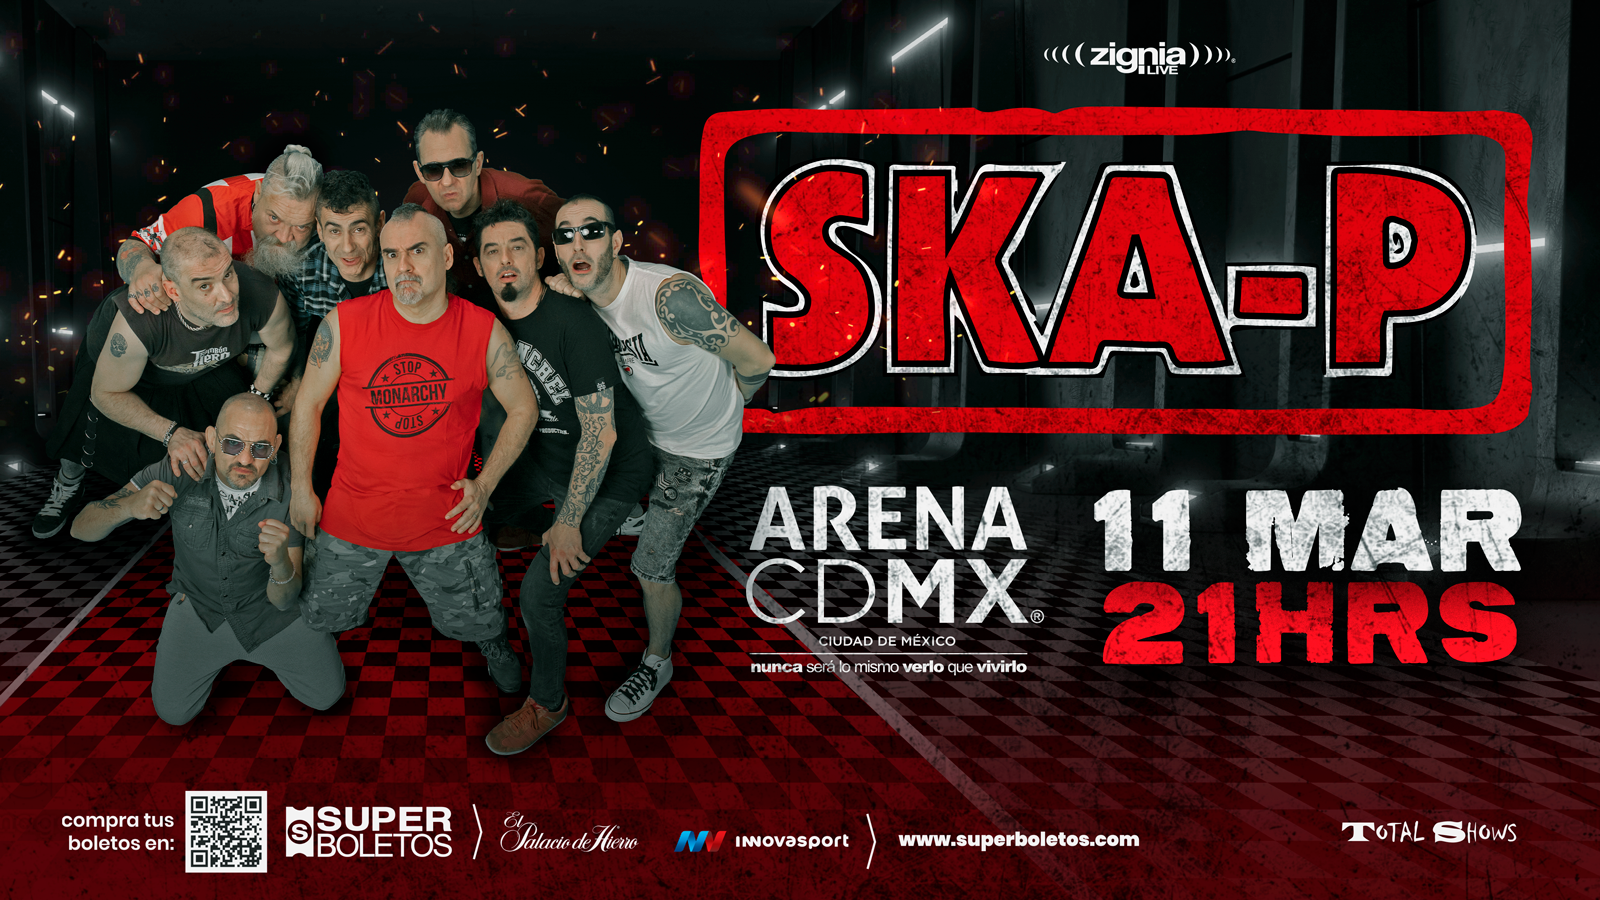 La banda española Ska-P llega a México